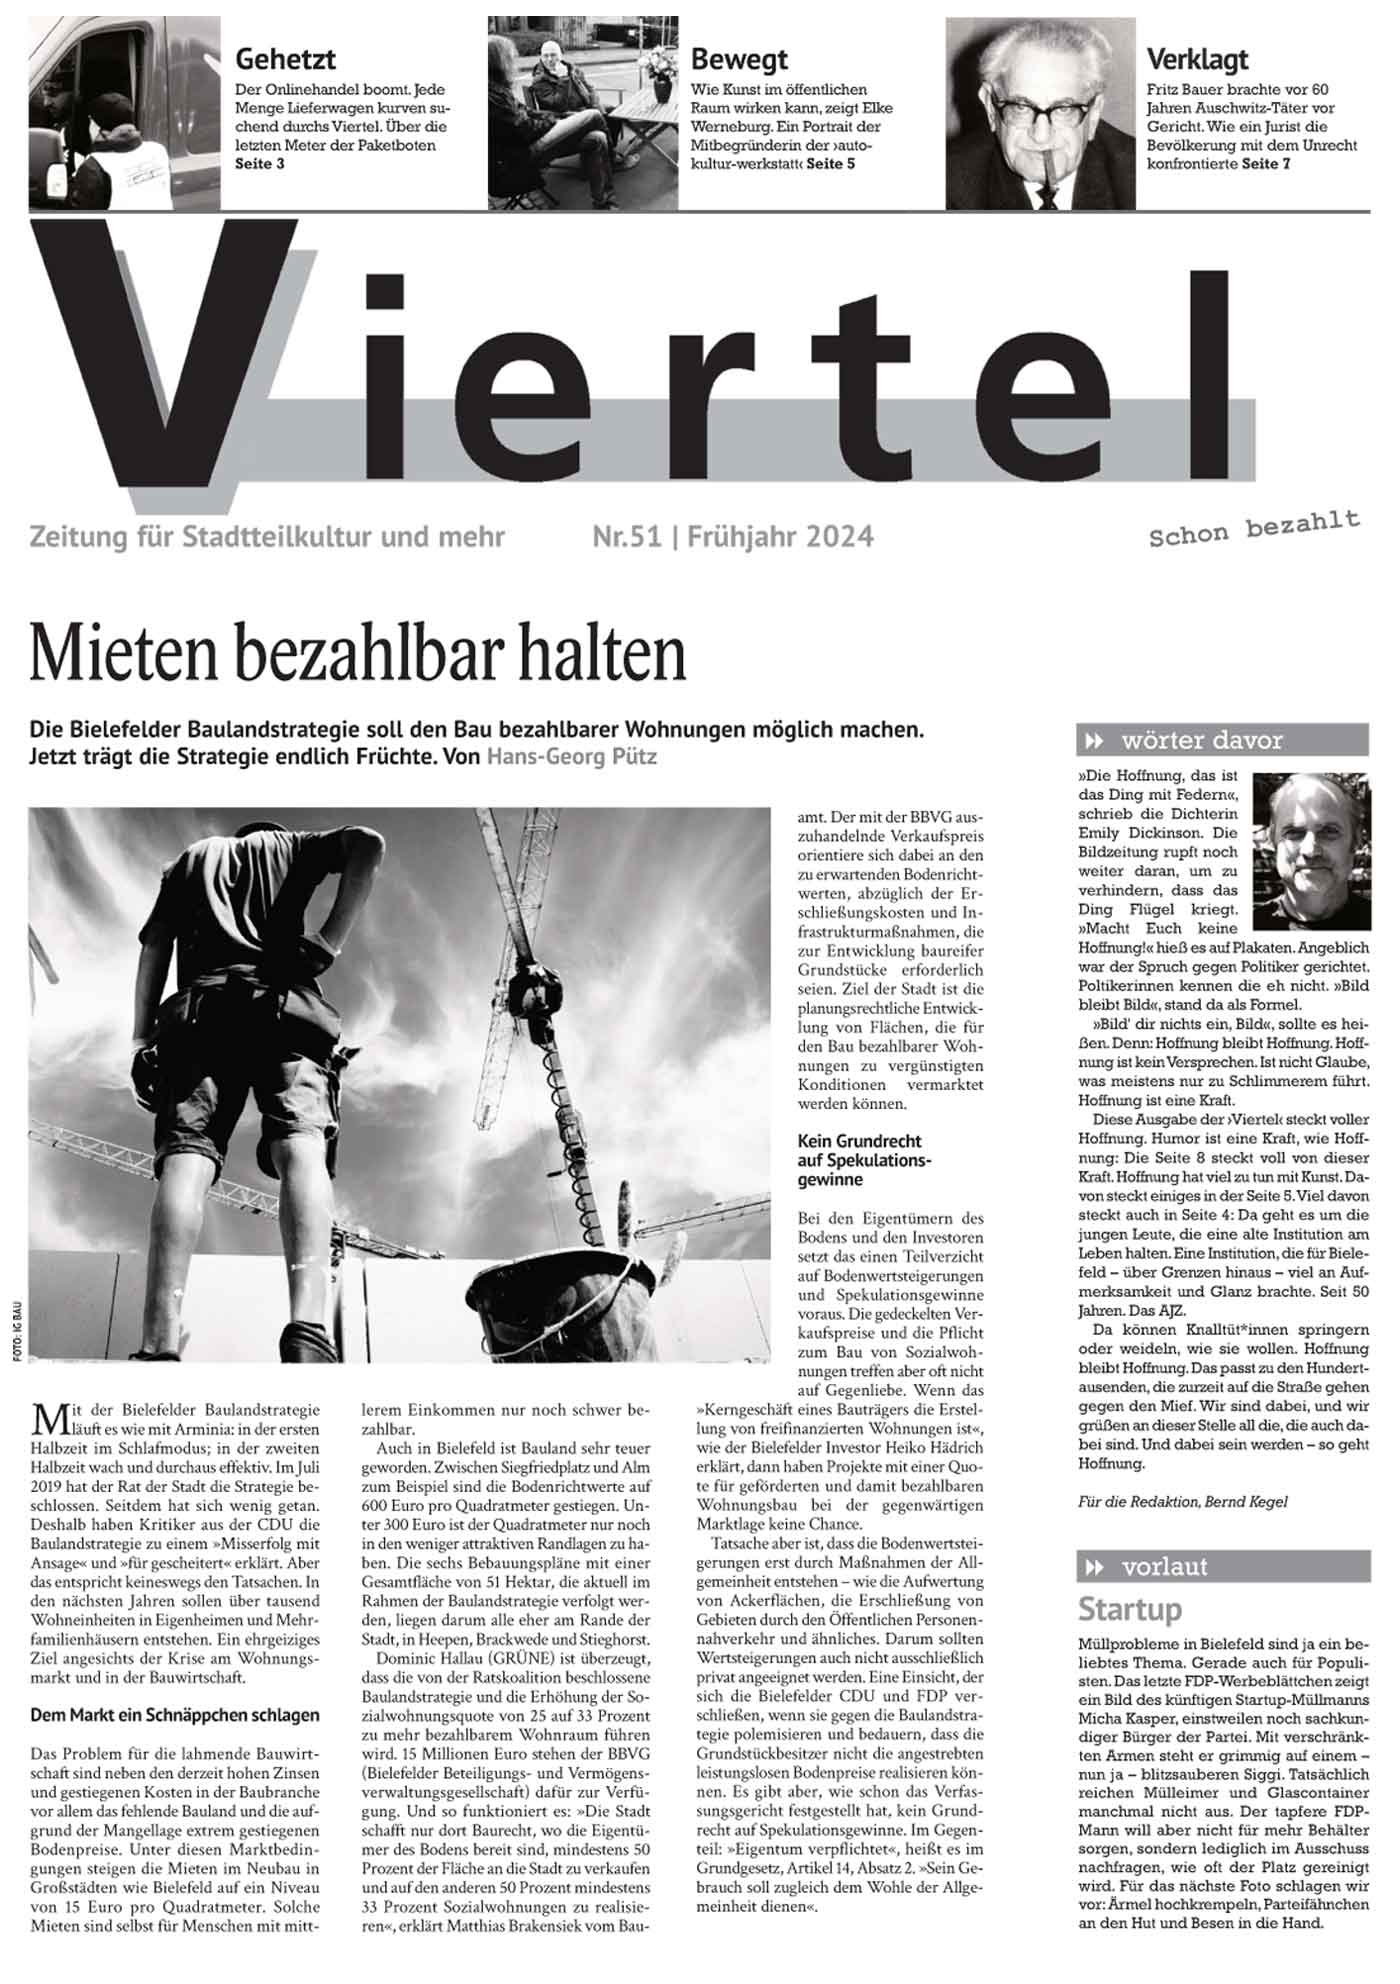 Die aktuelle Ausgabe der Stadtteilzeitung "Viertel"